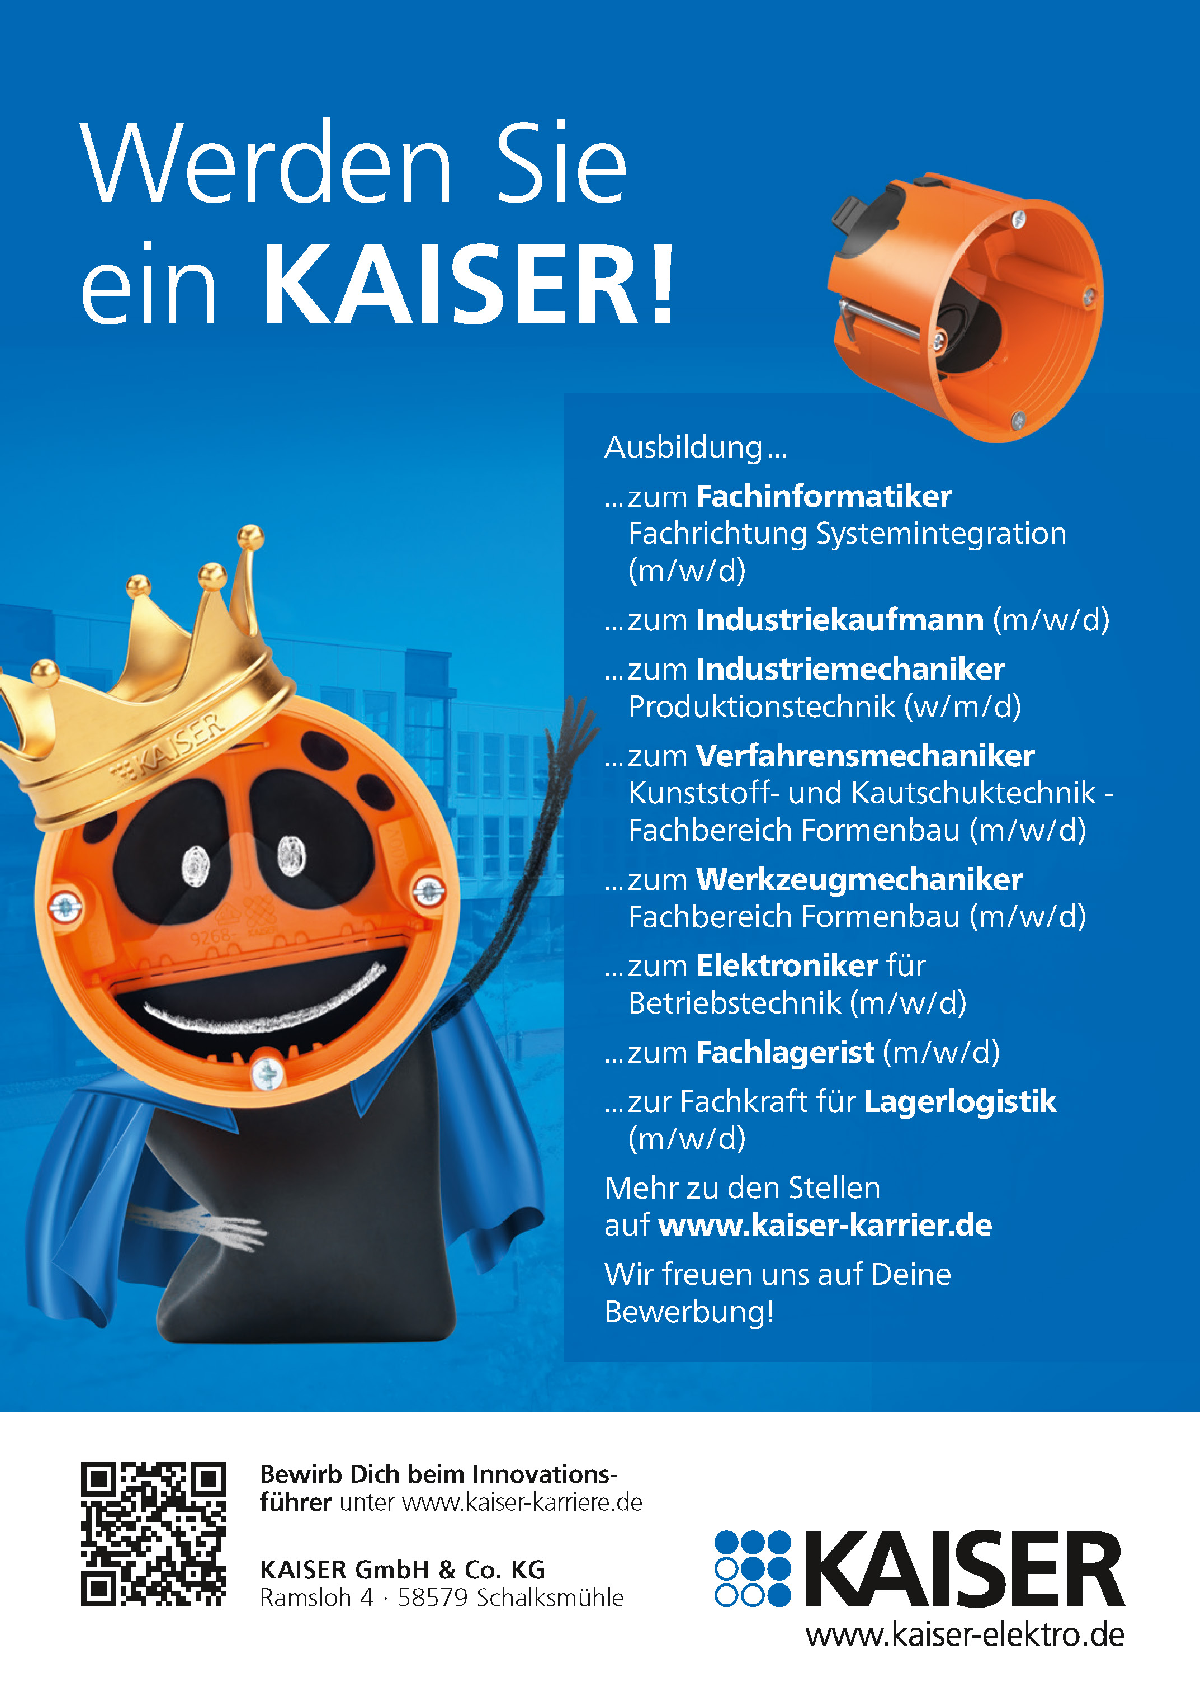 AISER GmbH & Co. KG